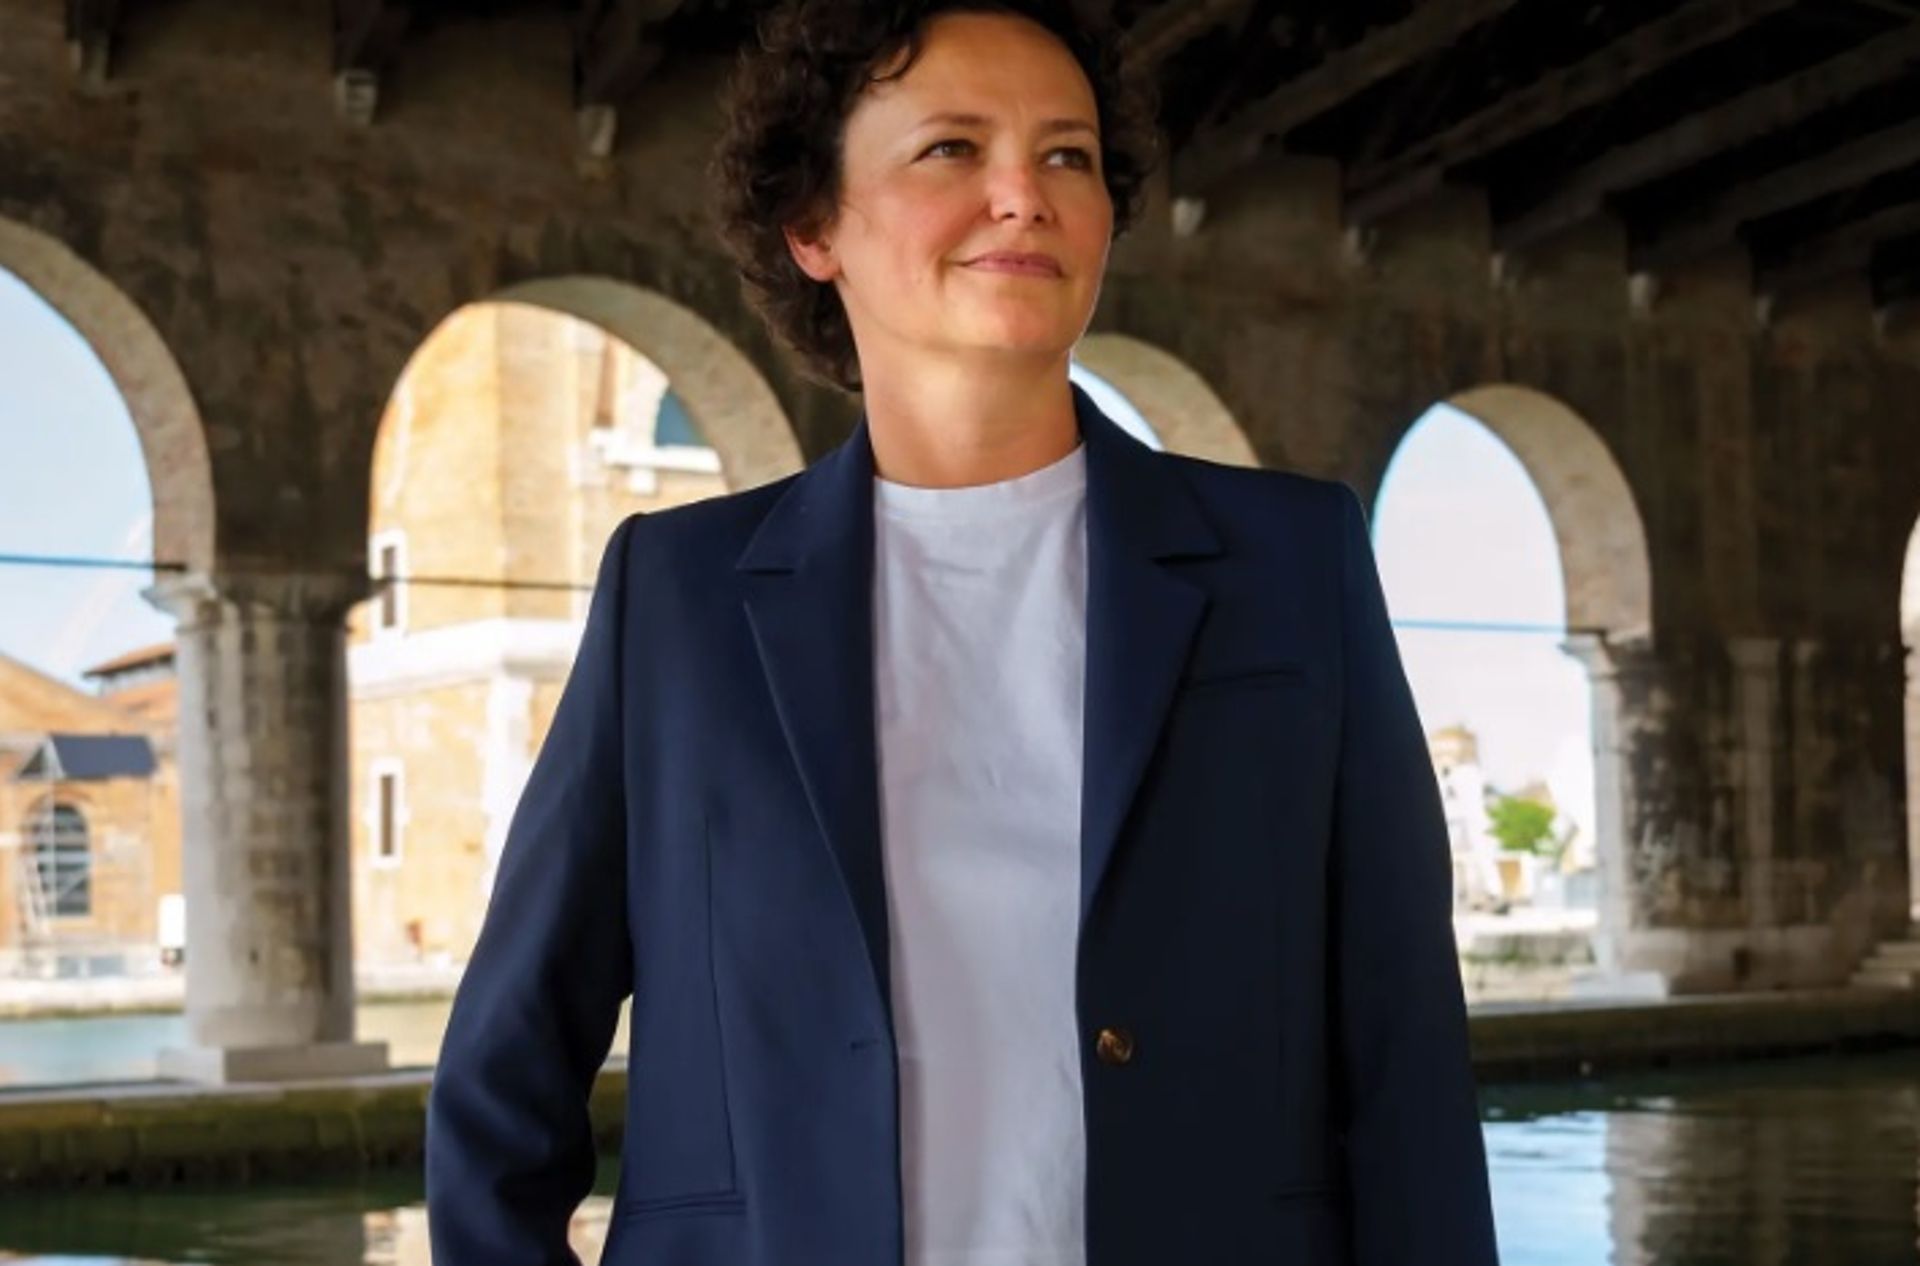 ססיליה אלמני, המנהלת האמנותית של הביאנלה בוונציה השנה, ניהלה את תוכנית האמנות הציבורית של ניו יורק מאז 2011

צילום: Andrea Avezzù, באדיבות La Biennale di Venezia